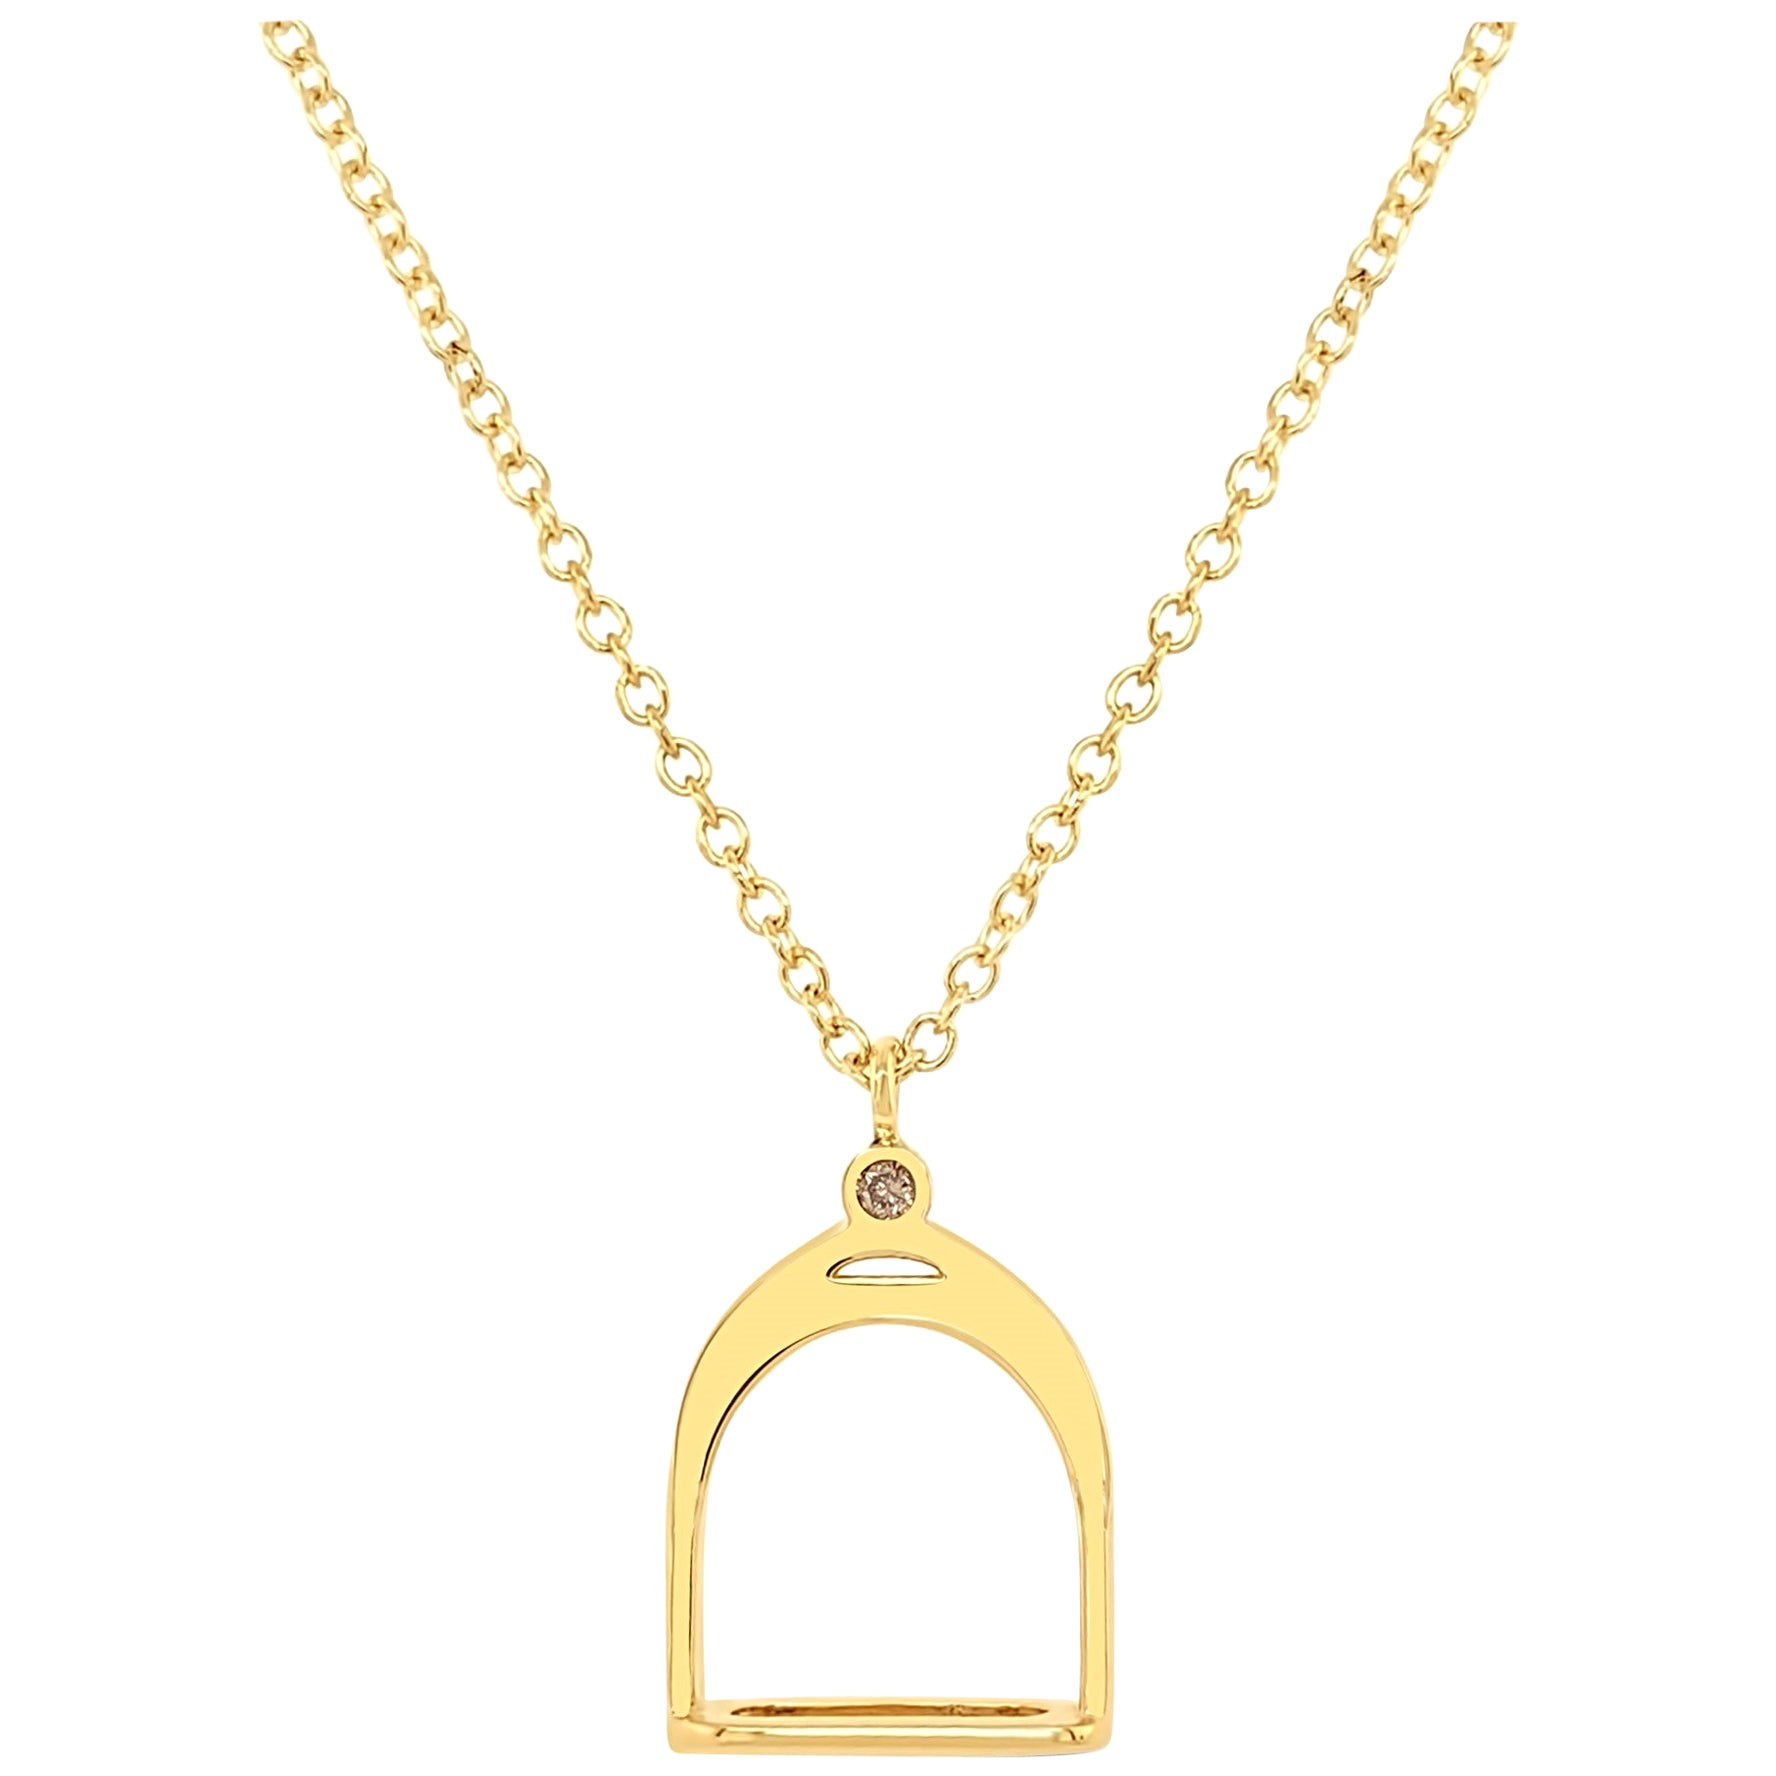 Garavelli: Steigbügel-Halskette mit Anhänger, 18 Karat Gelbgold, braune Diamanten